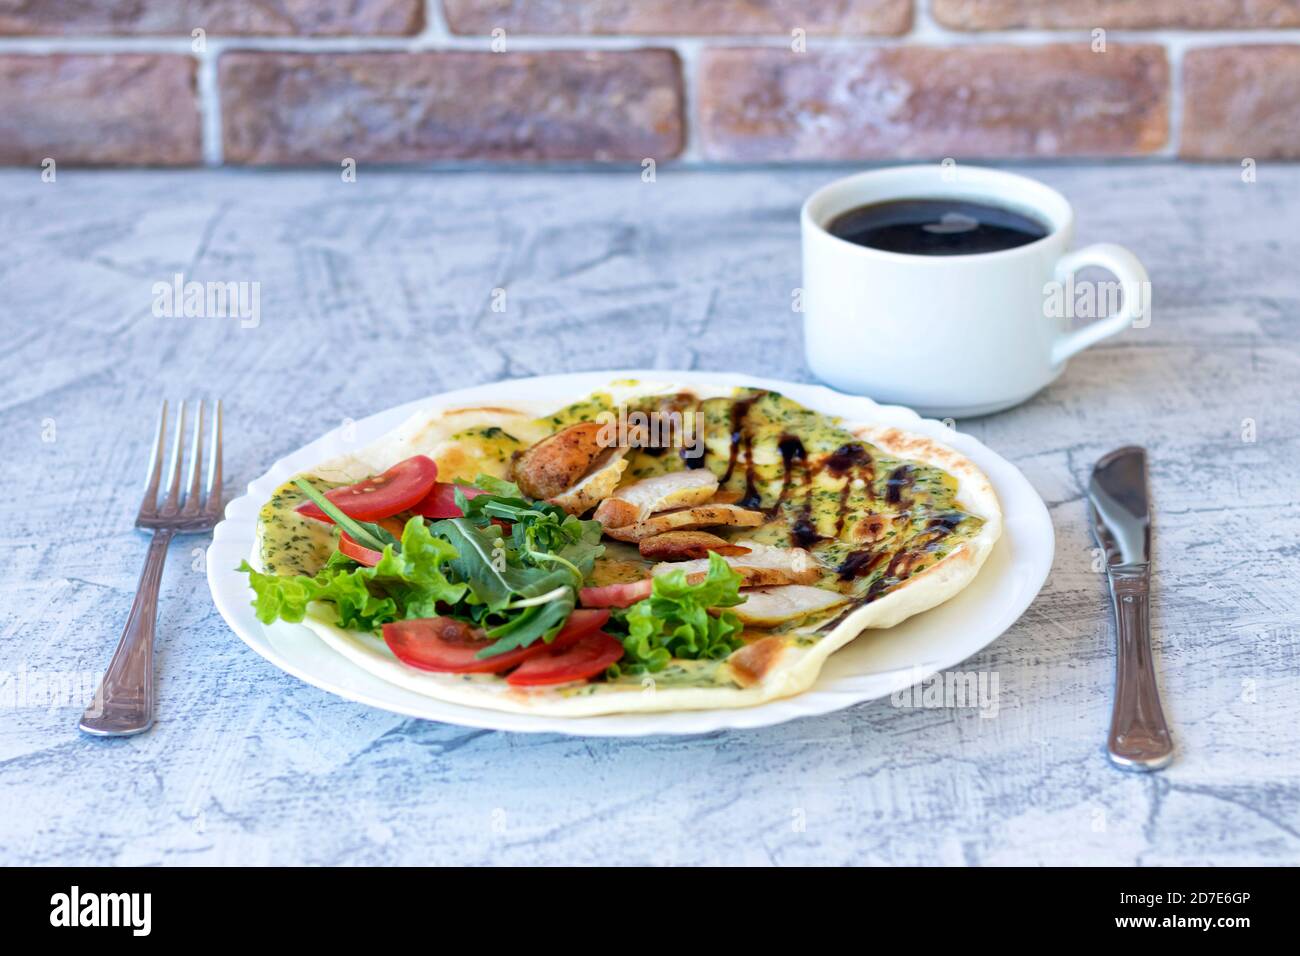 Petit-déjeuner italien avec café. Piadina avec poulet grillé, tomates, salade et arugula. Délicieux petit déjeuner servi sur table. Mise au point douce Banque D'Images